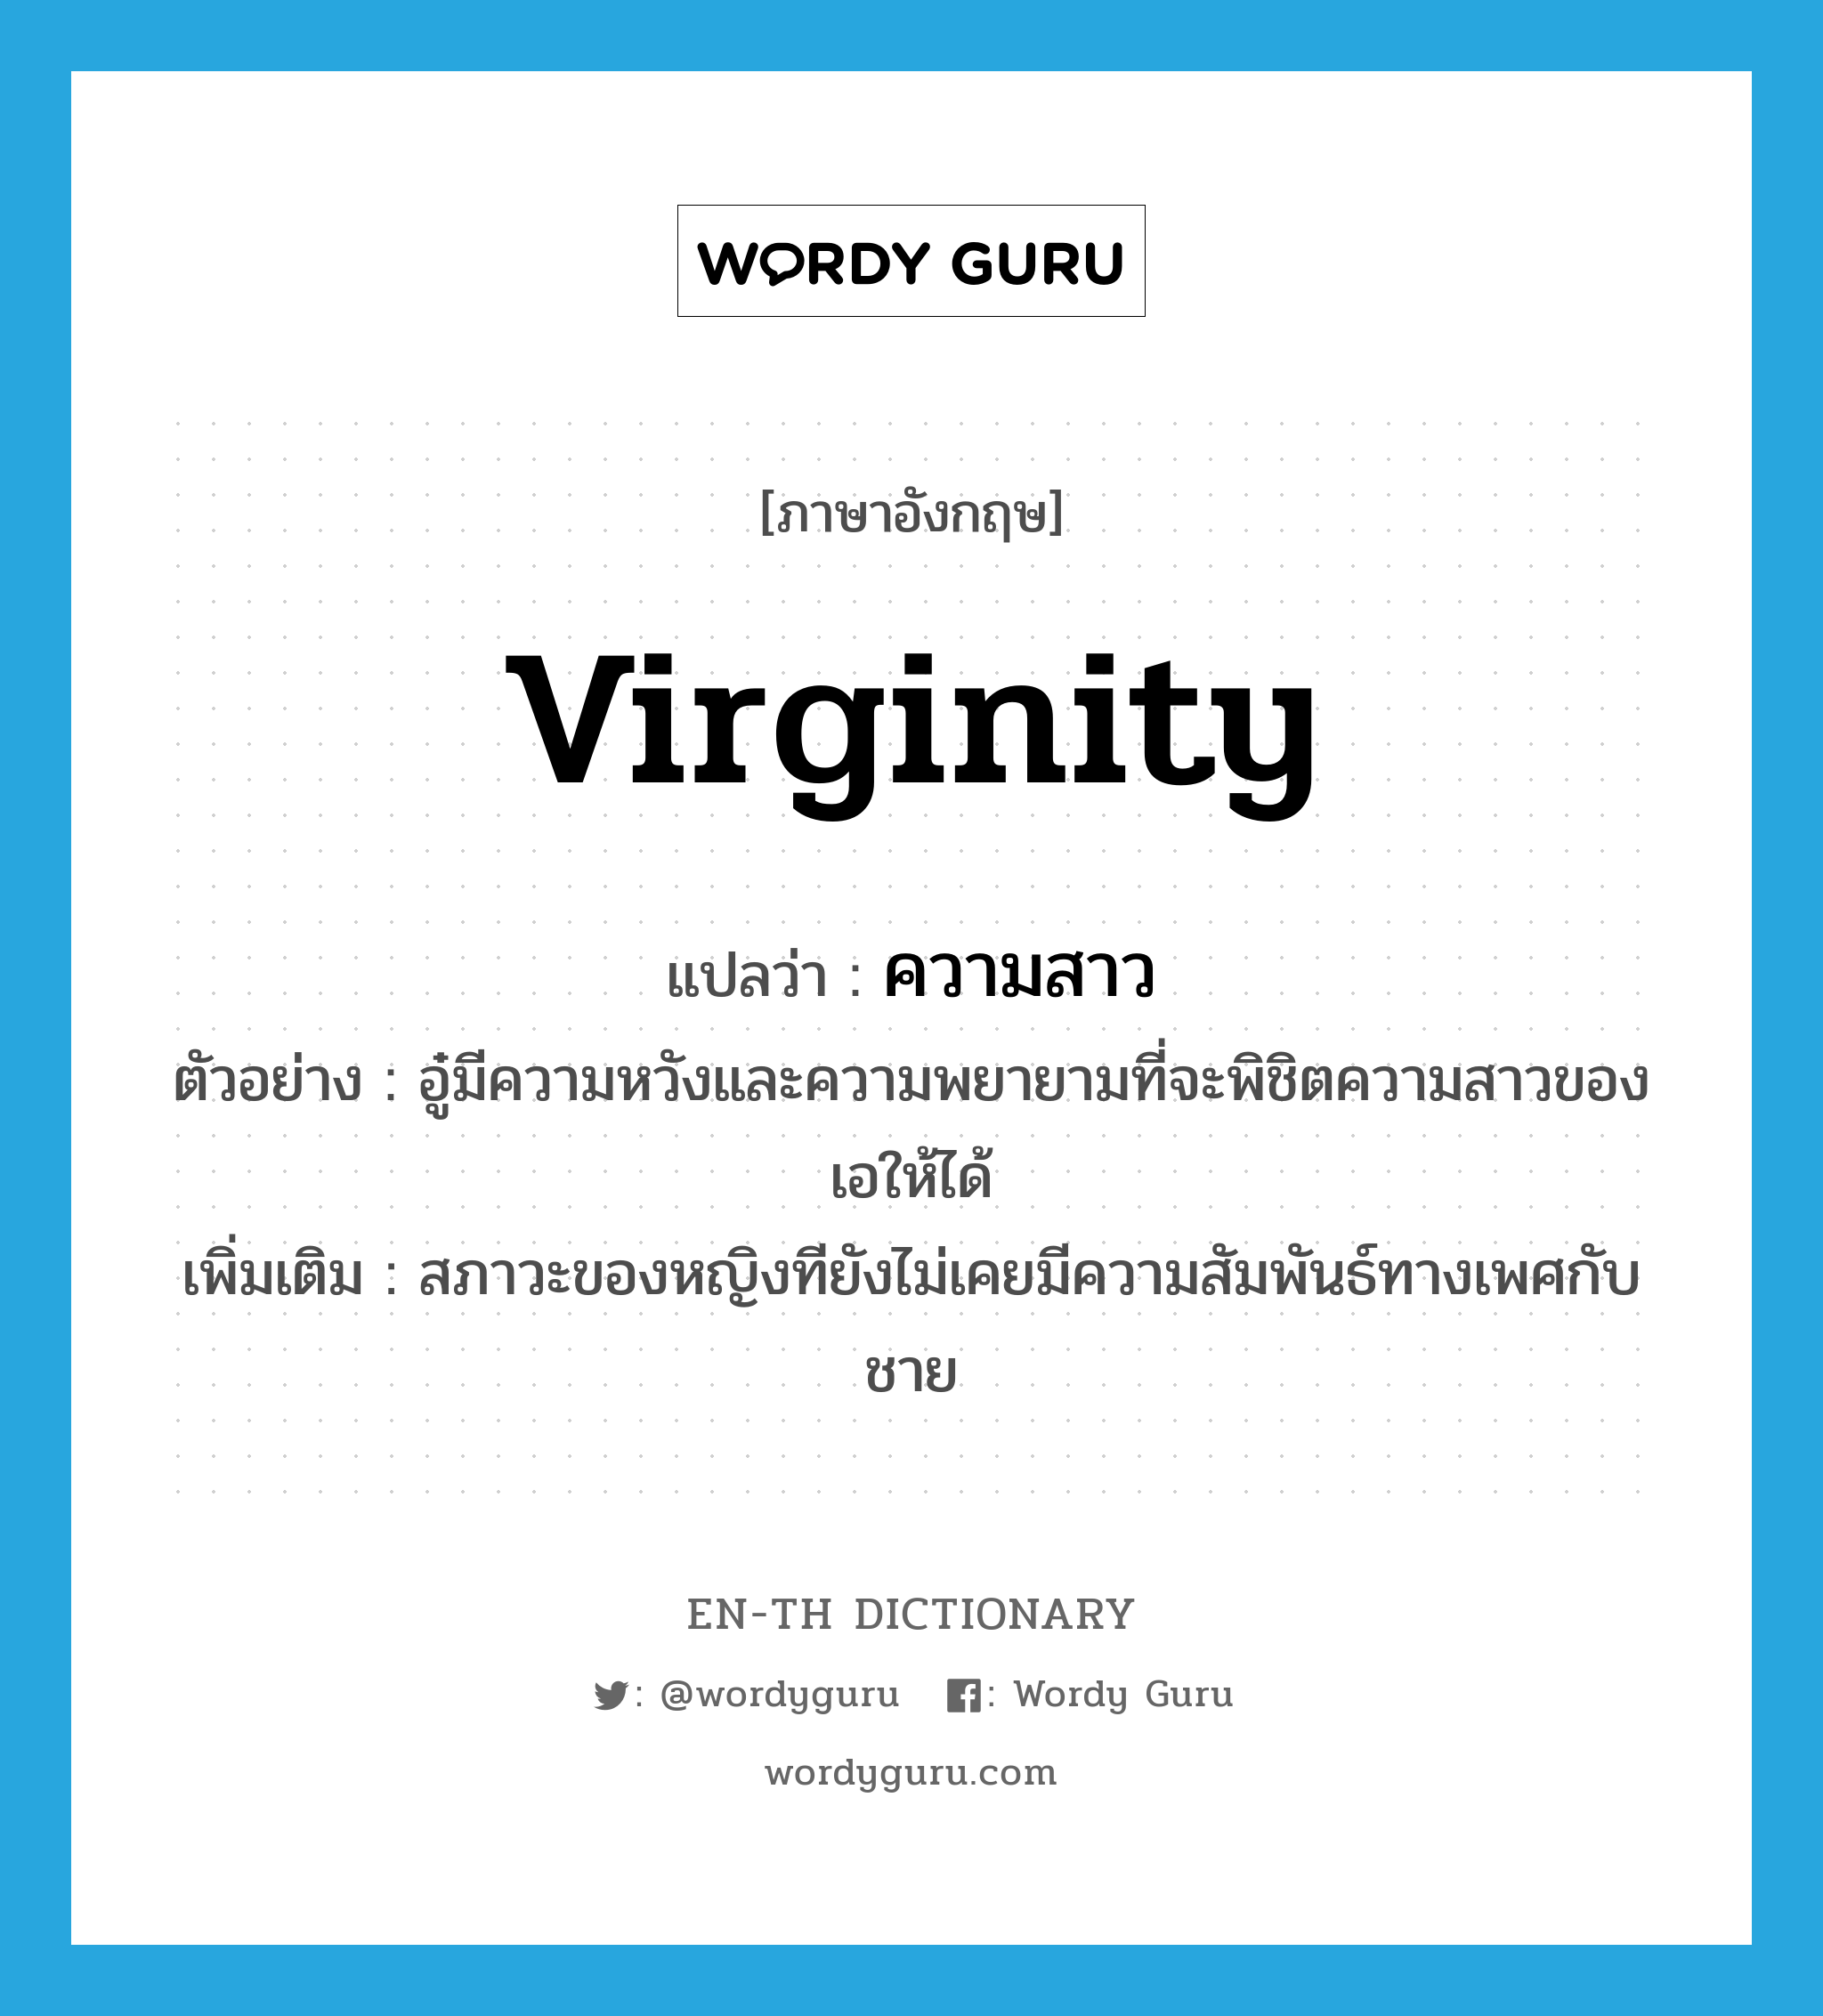 virginity แปลว่า?, คำศัพท์ภาษาอังกฤษ virginity แปลว่า ความสาว ประเภท N ตัวอย่าง อู๋มีความหวังและความพยายามที่จะพิชิตความสาวของเอให้ได้ เพิ่มเติม สภาวะของหญิงทียังไม่เคยมีความสัมพันธ์ทางเพศกับชาย หมวด N